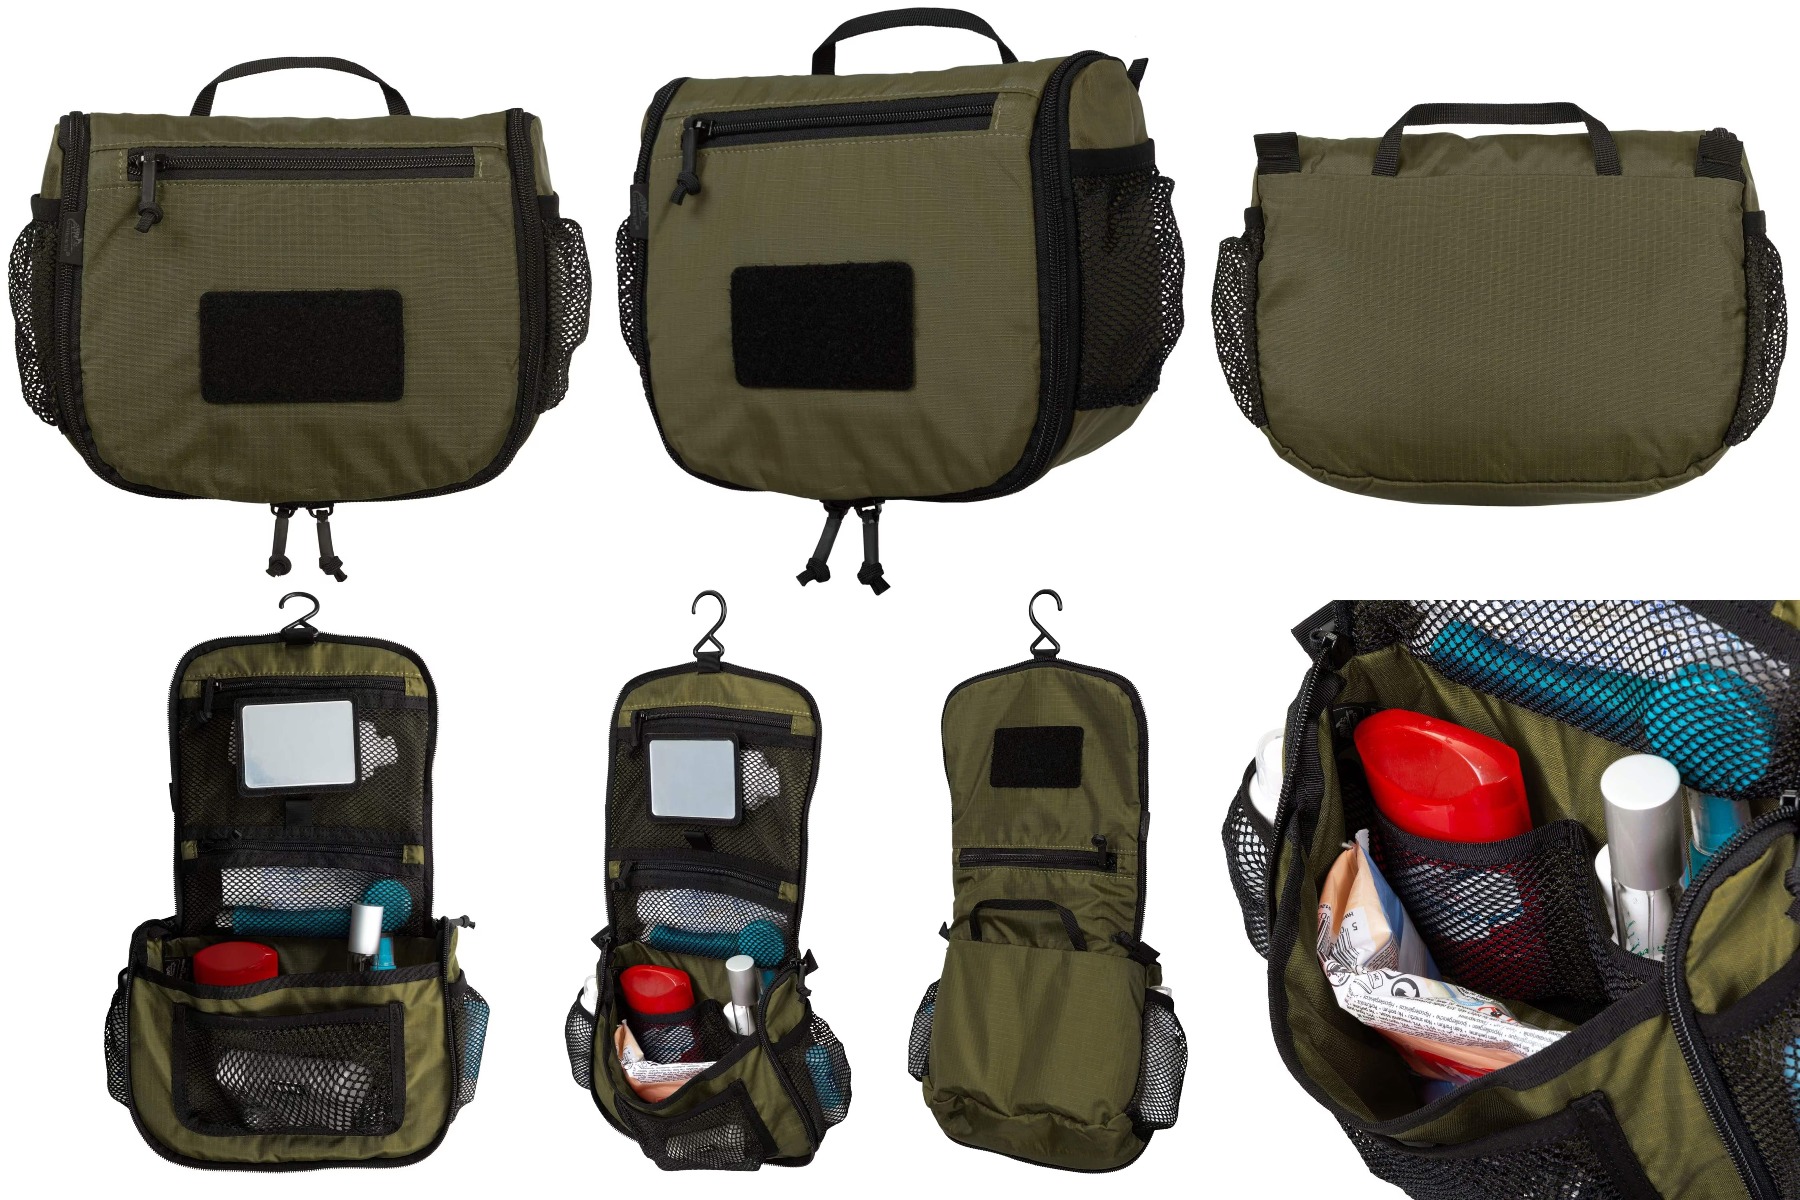 Izberite funkcionalnost in slog z Helikon potovalno toaletno torbico v olivni barvni kombinaciji. Popolna za vojaške navdušence in potovanja.